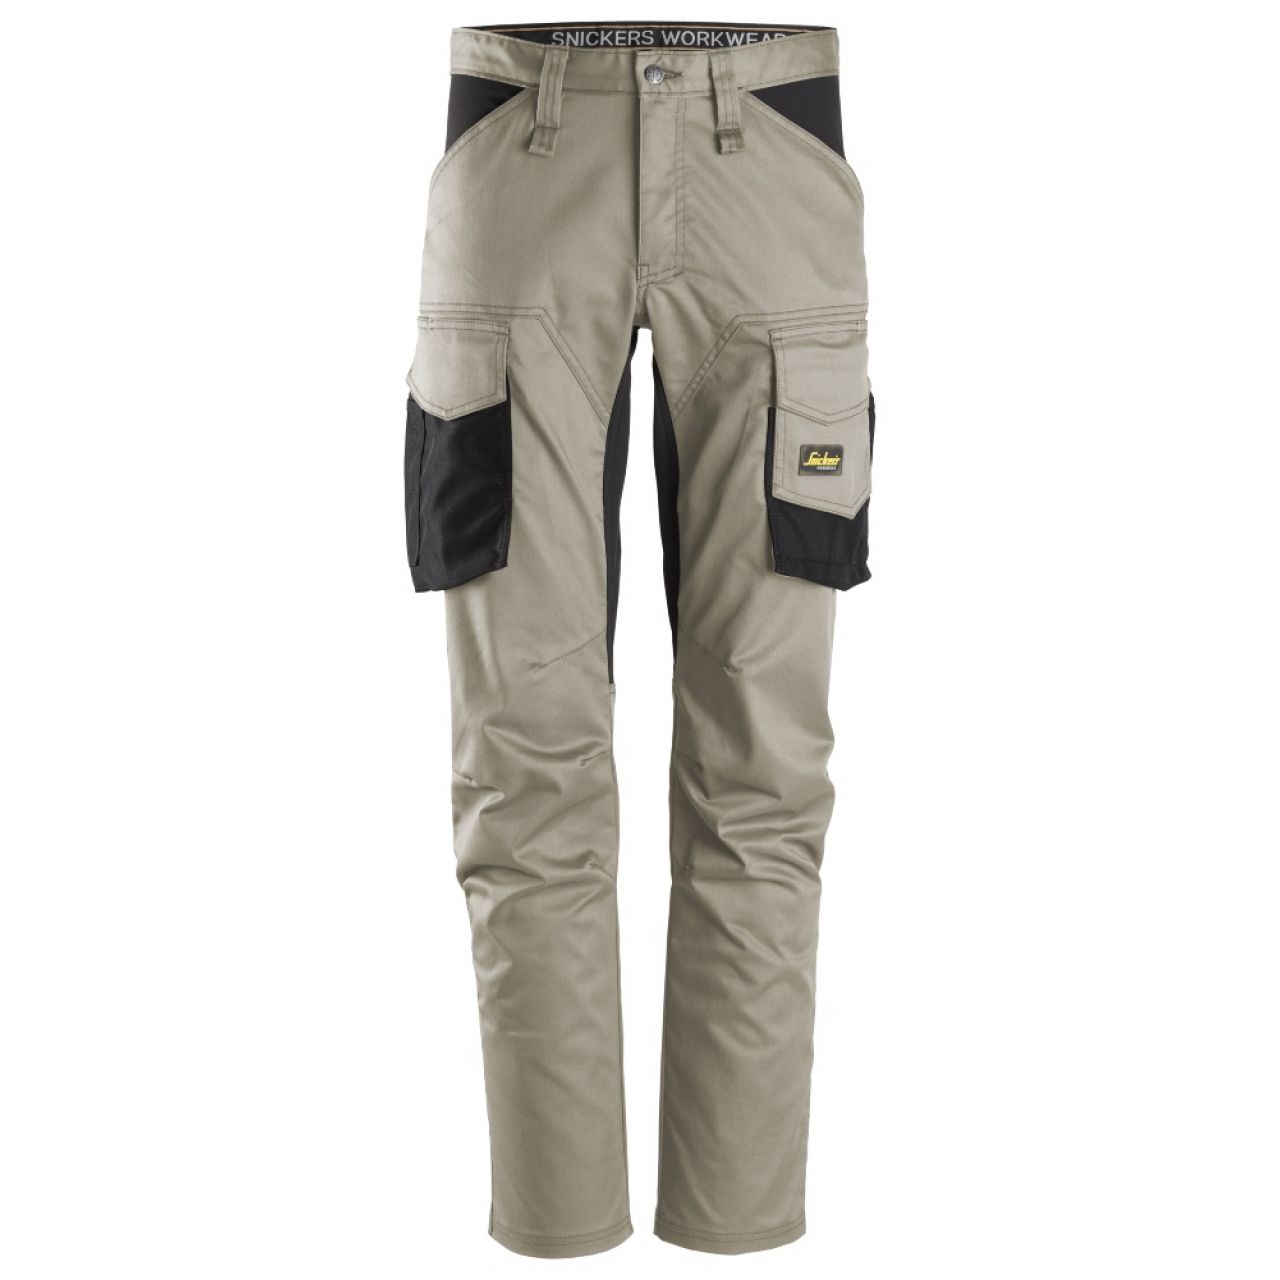 6803 Pantalones largos de trabajo elásticos sin bolsillos para las rodilleras AllroundWork beige-negro talla 64